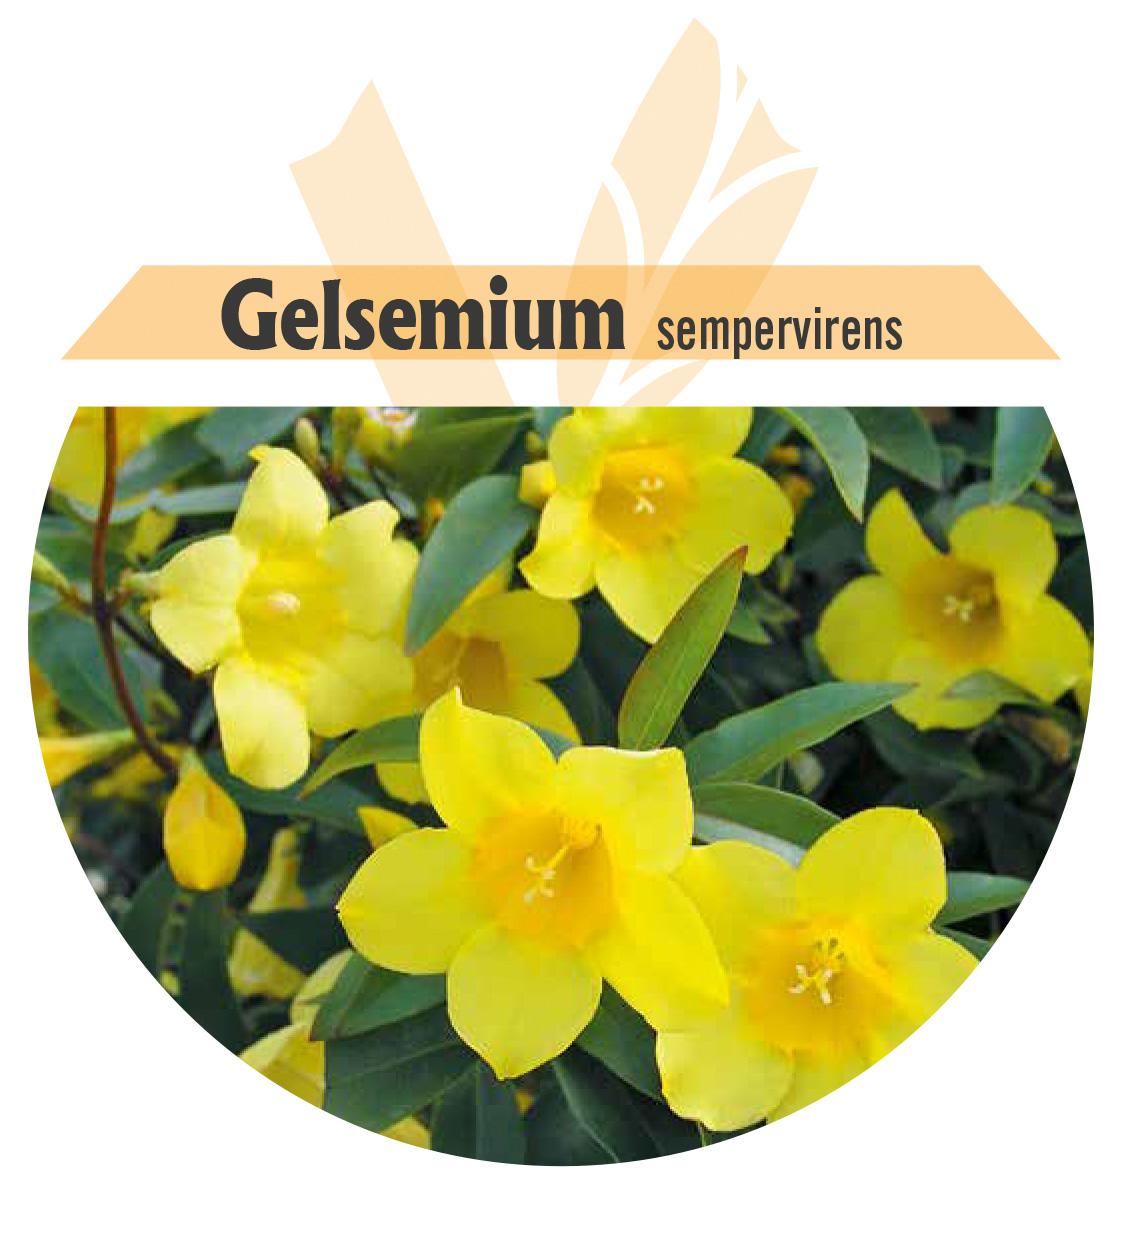 Gelsemium sempervirens